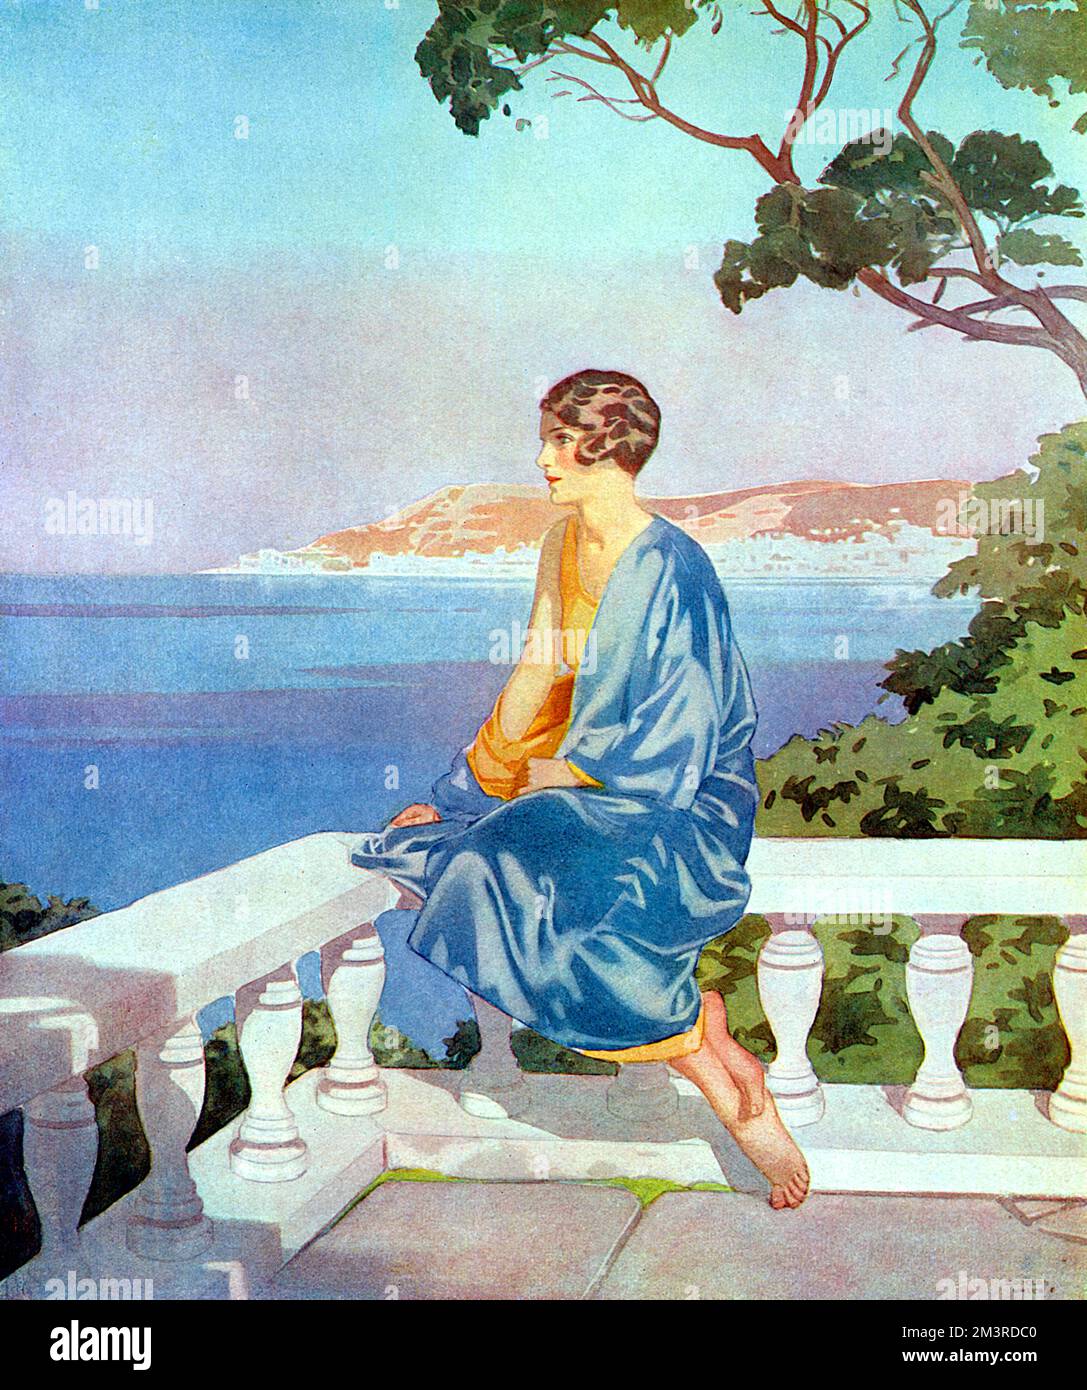 "Manteau" d'Azur! - Une pièce de théâtre sur la Côte d'Azur, montrant une jeune femme en satin bleu donnant sur un balcon au-dessus de la côte quelque part sur la Côte d'Azur. Date: 1931 Banque D'Images